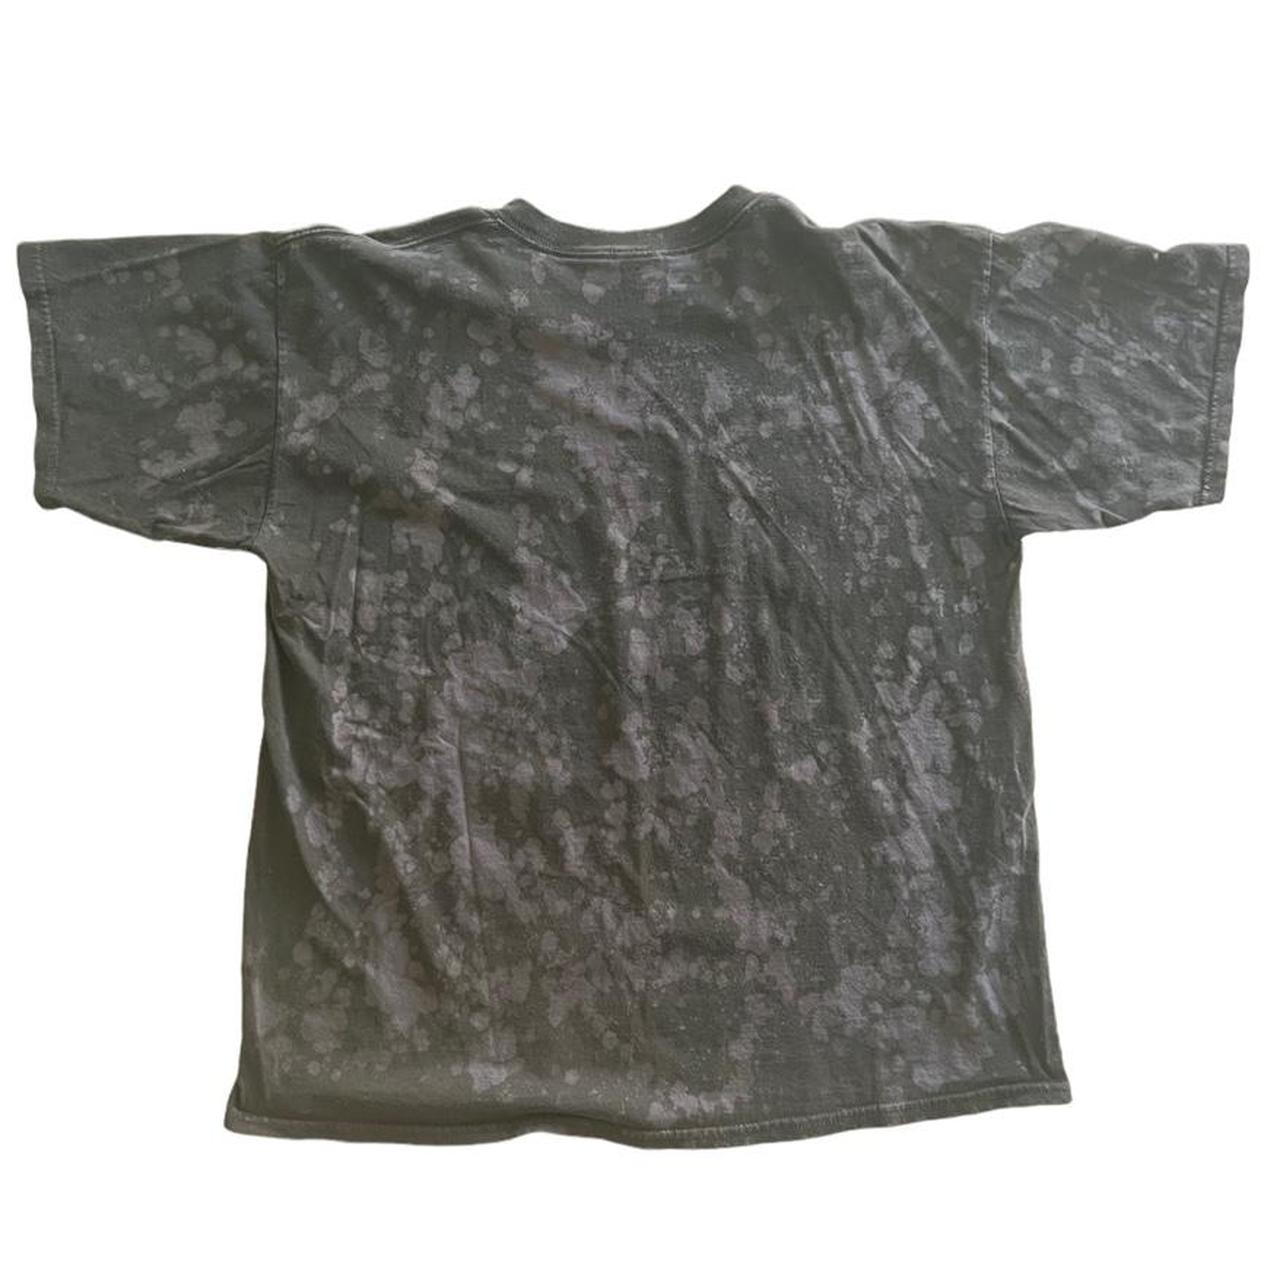 Product Image 2 - Vintage Danzig Luciferi T shirt